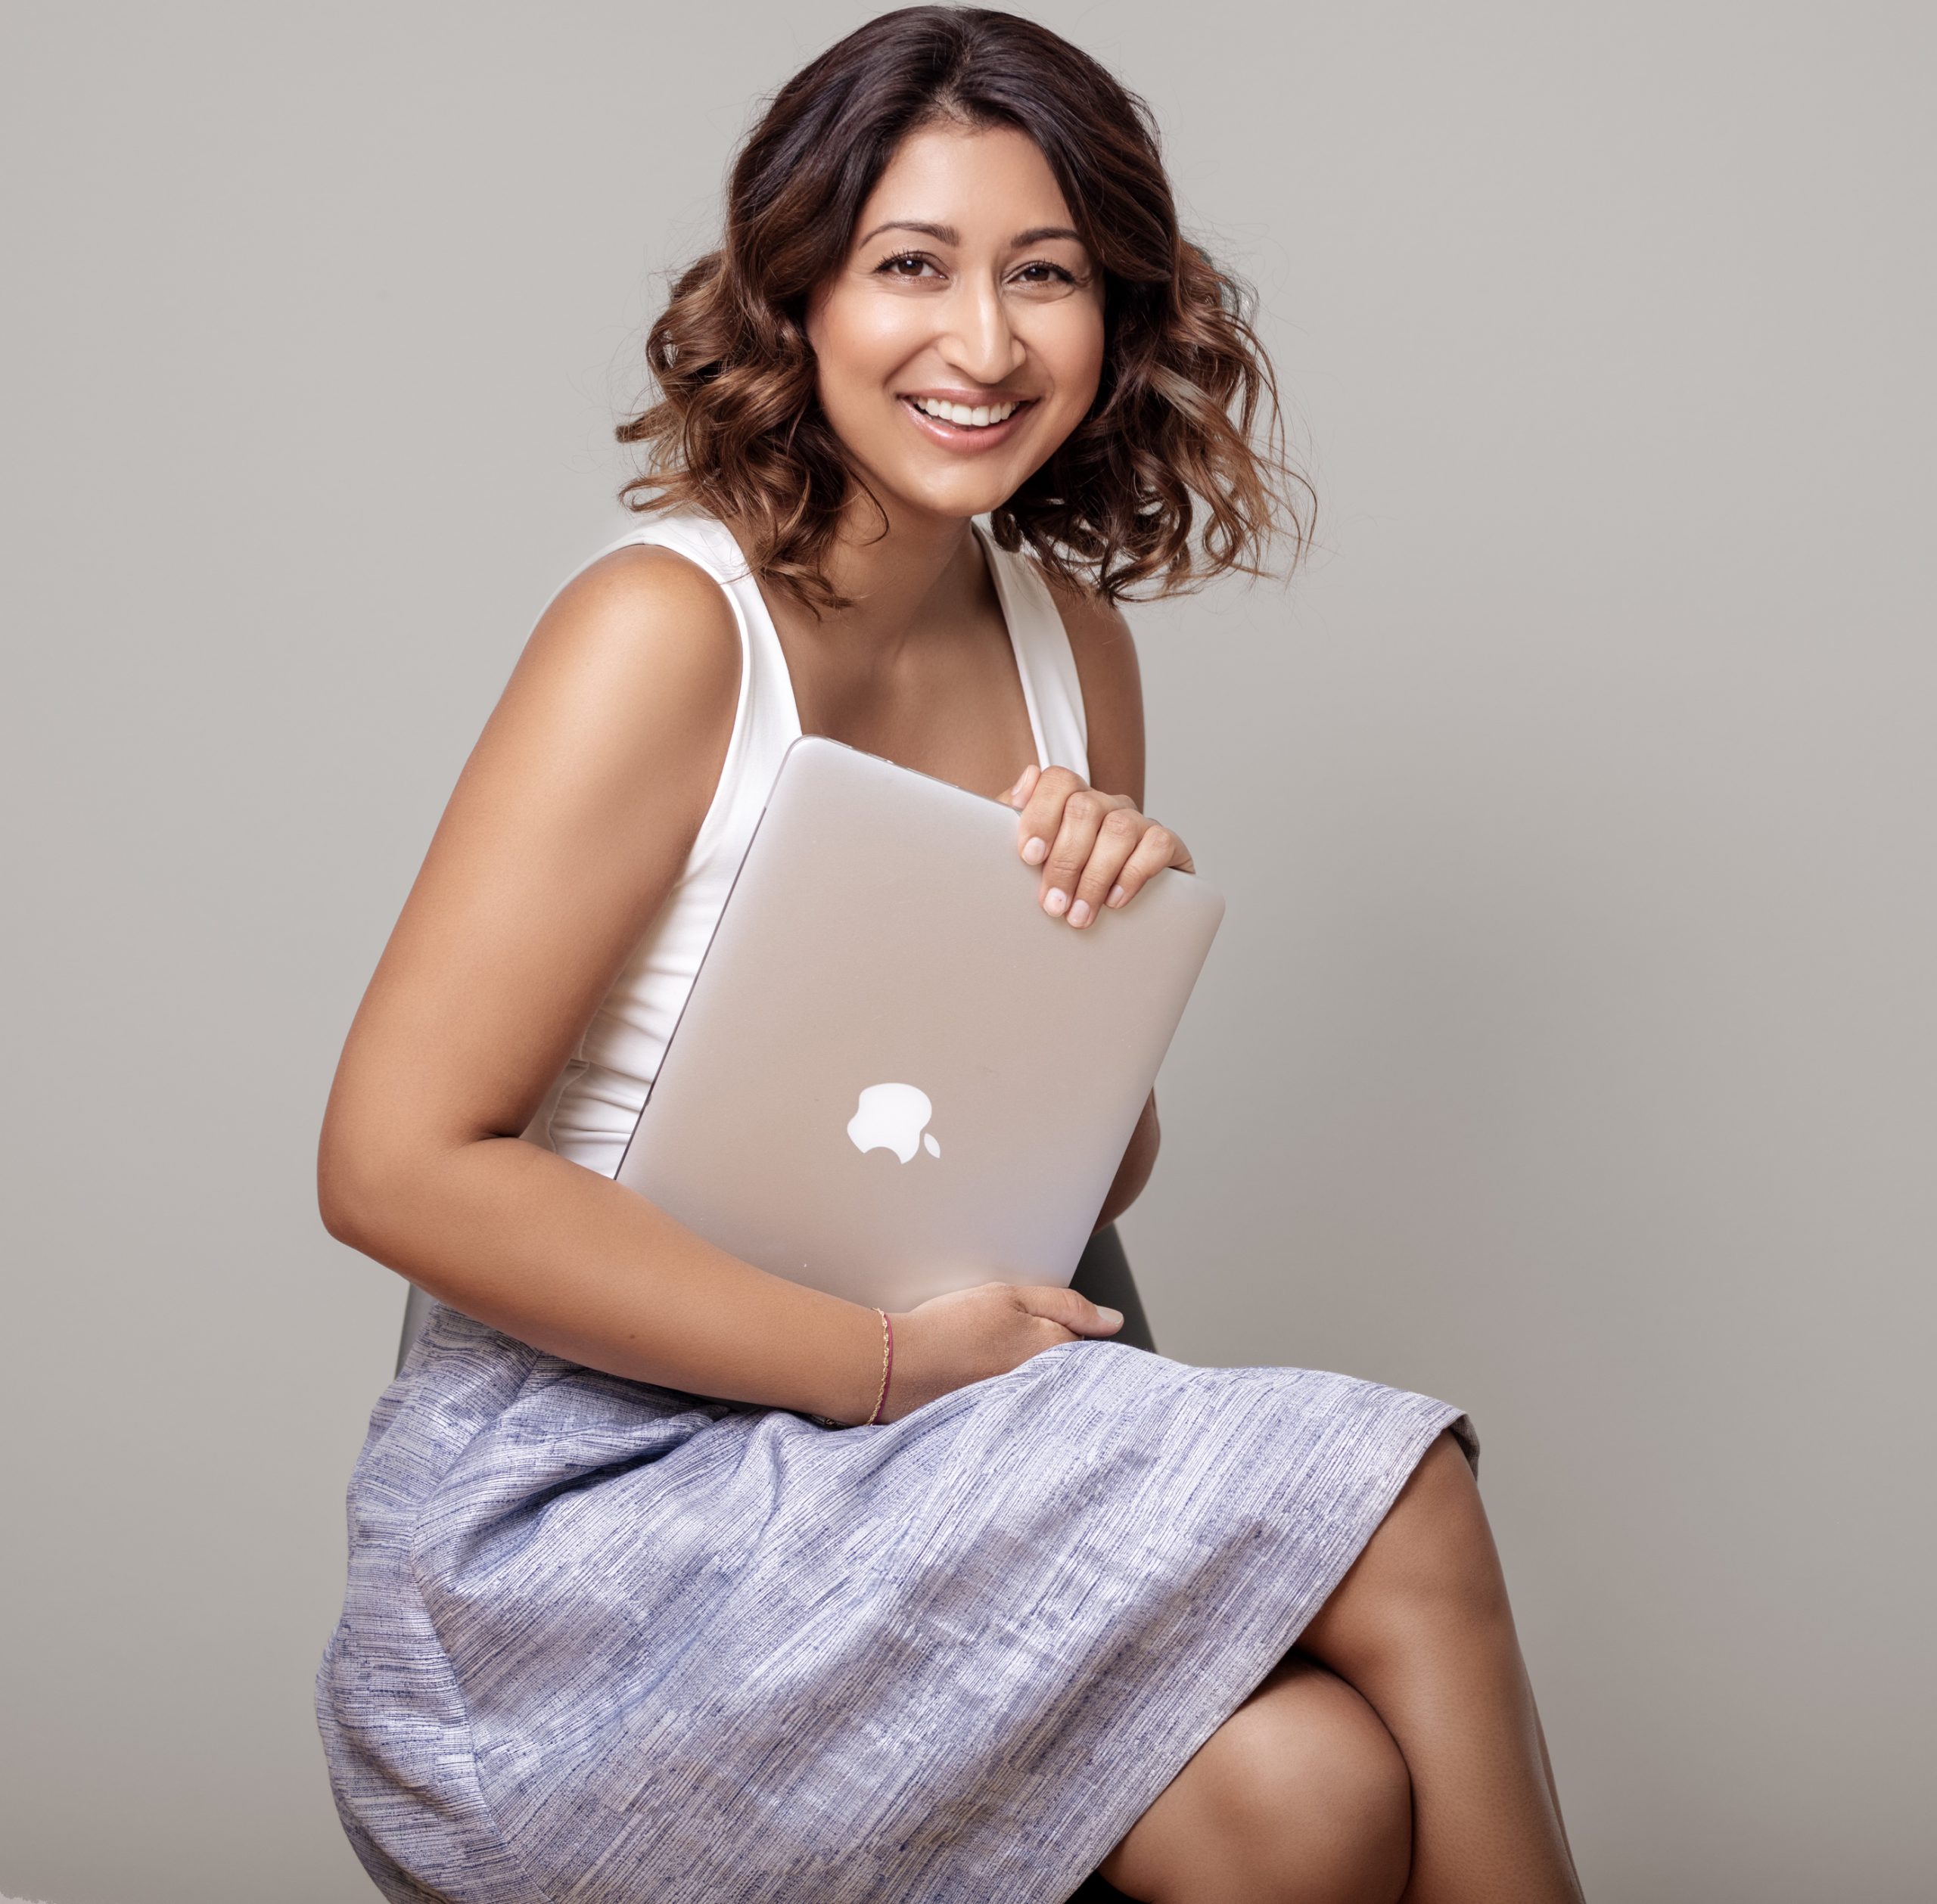 Mashaal Omary sitzt lächelnd auf einem Hocker und hält ihren Laptop